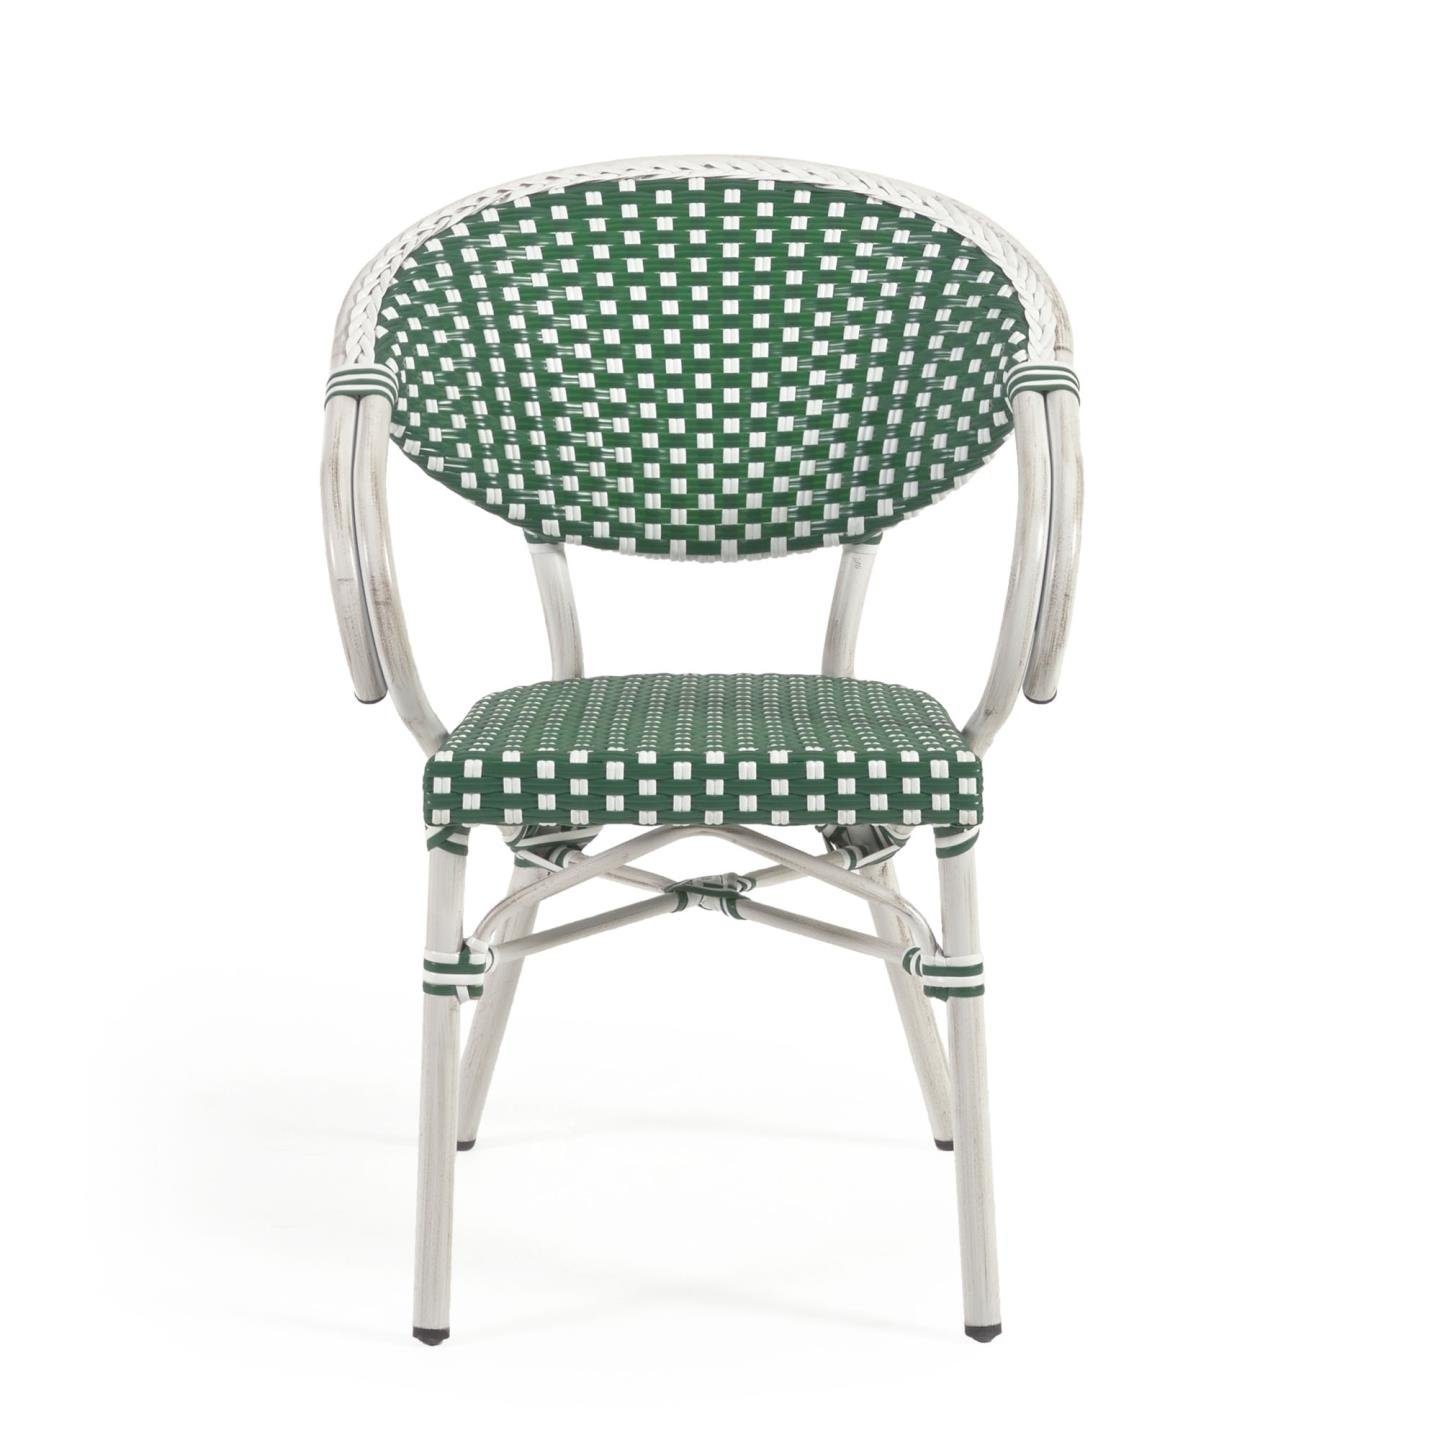 Natur24 Gartenstuhl Outdoor Bistro-Stuhl mit Armlehne Marilyn 57 x 81 x 58 Grün, Weiß